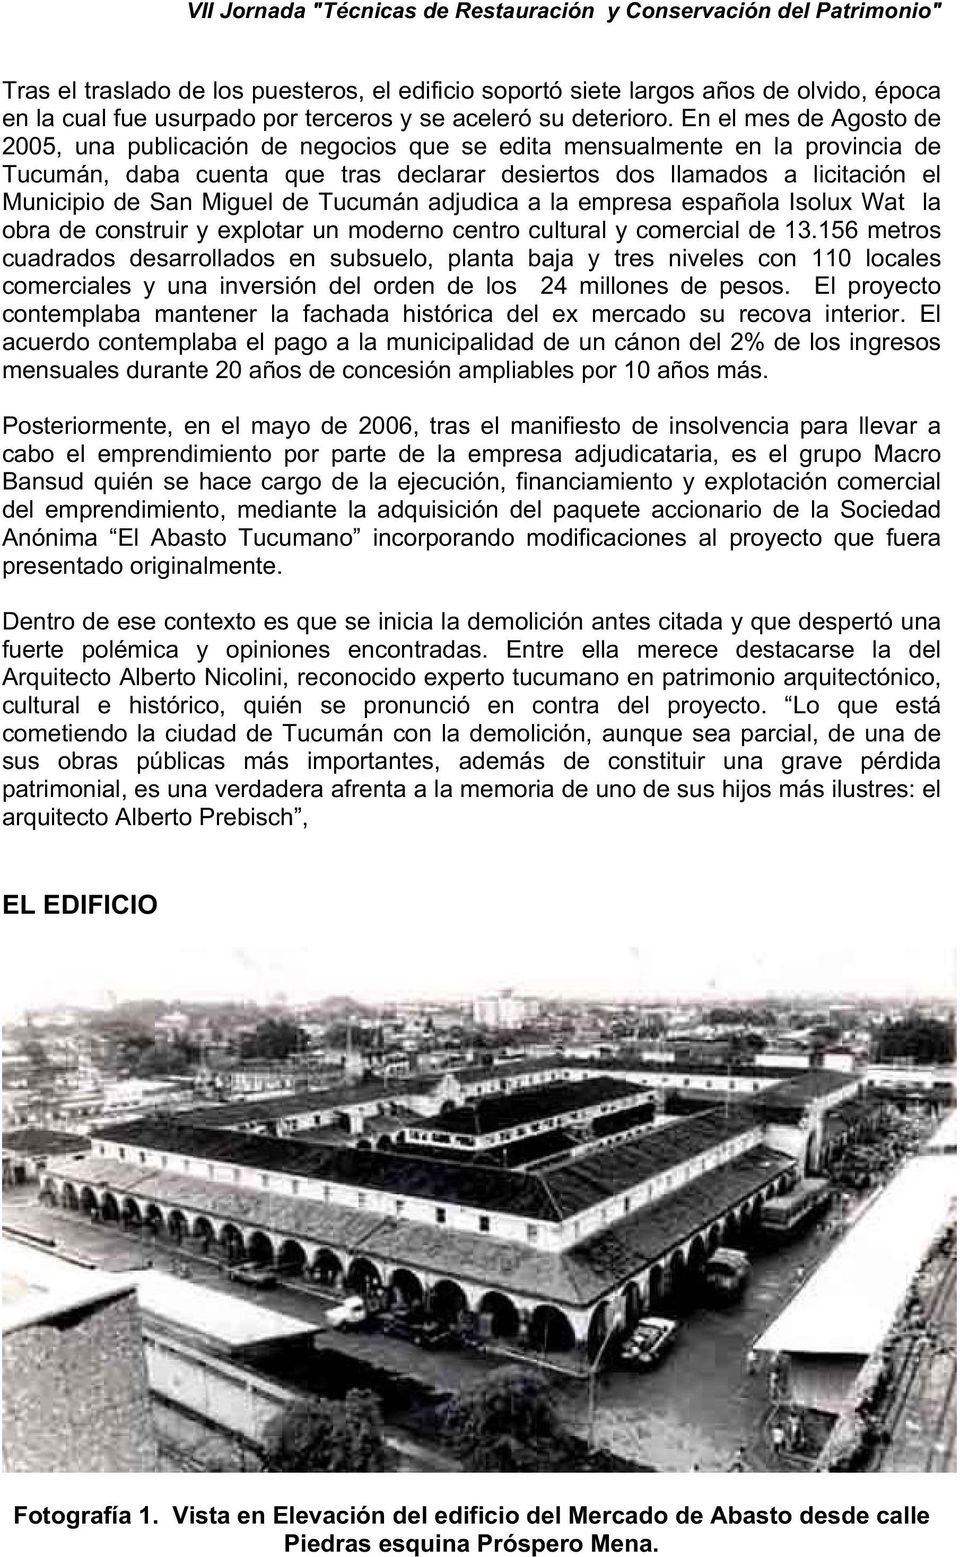 Miguel de Tucumán adjudica a la empresa española Isolux Wat la obra de construir y explotar un moderno centro cultural y comercial de 13.